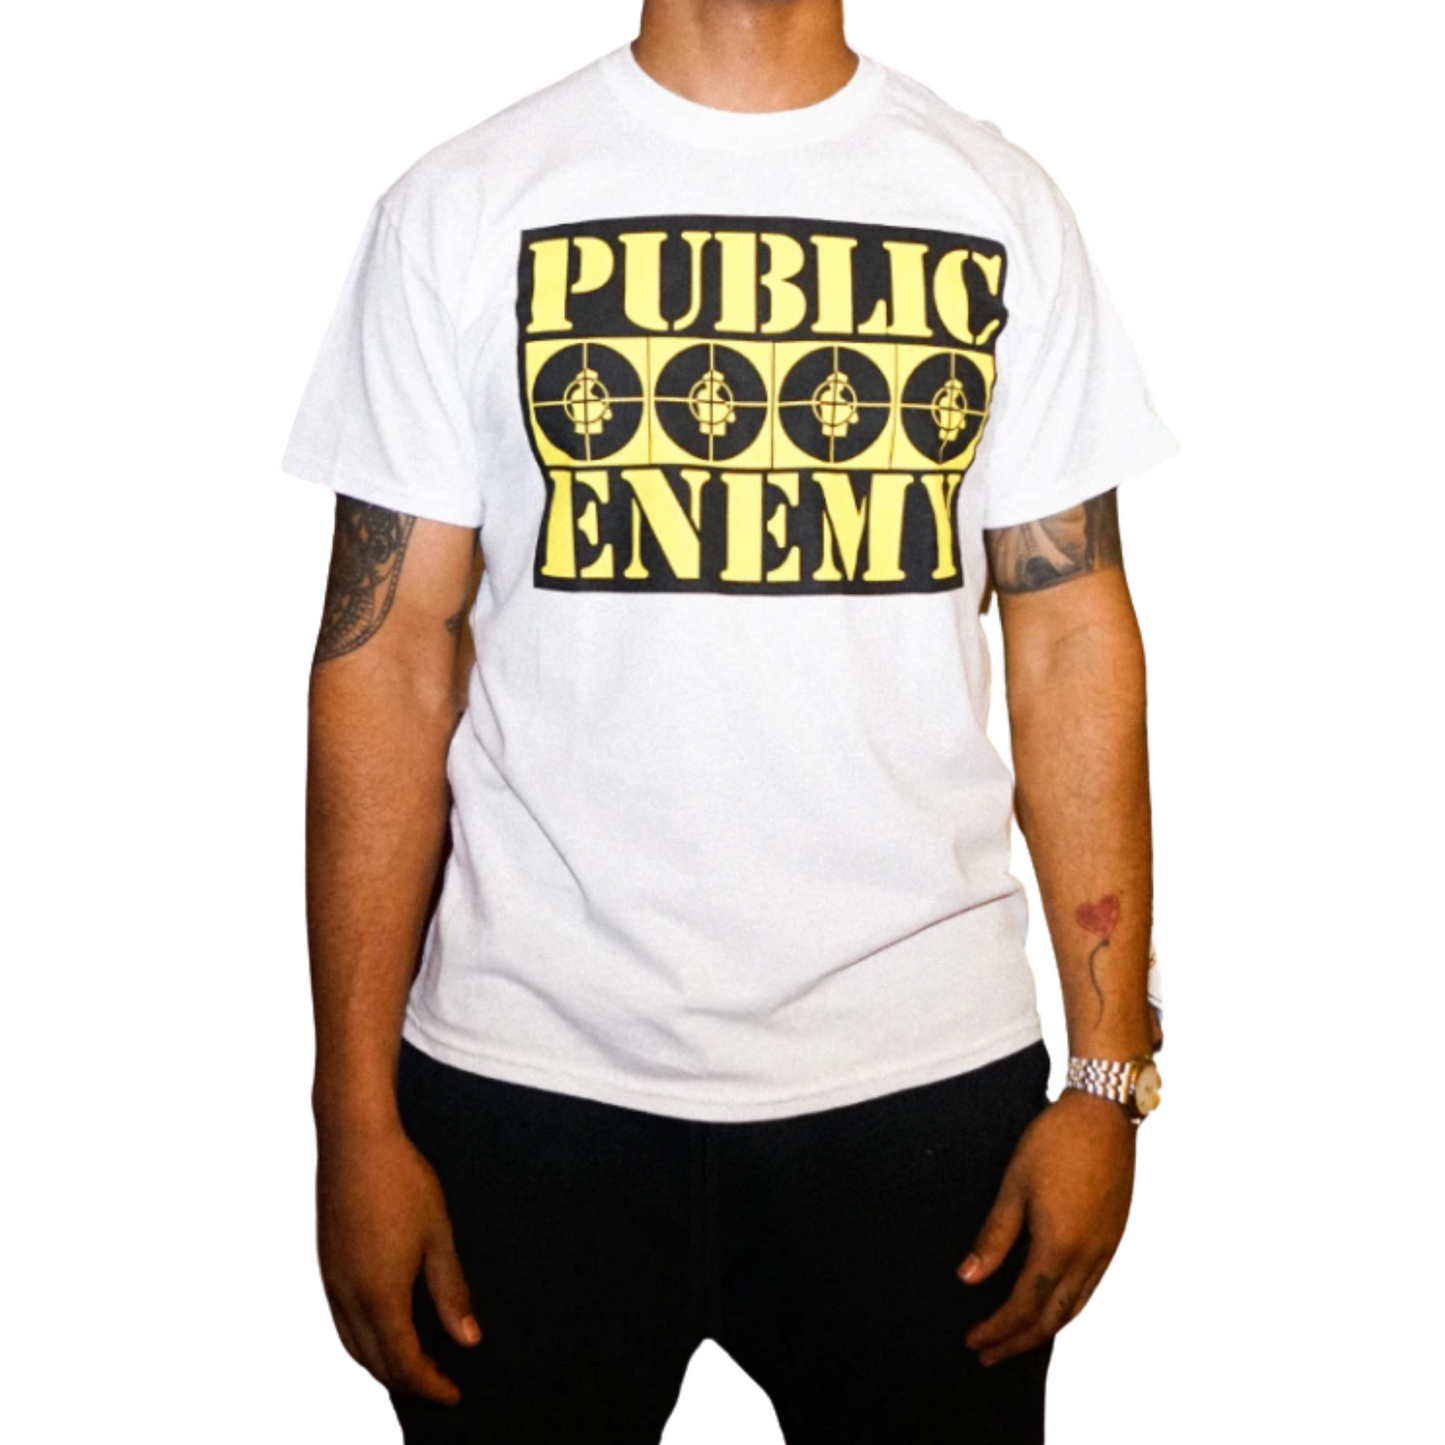 Public Enemy Vintage Style Graphic T-Shirt